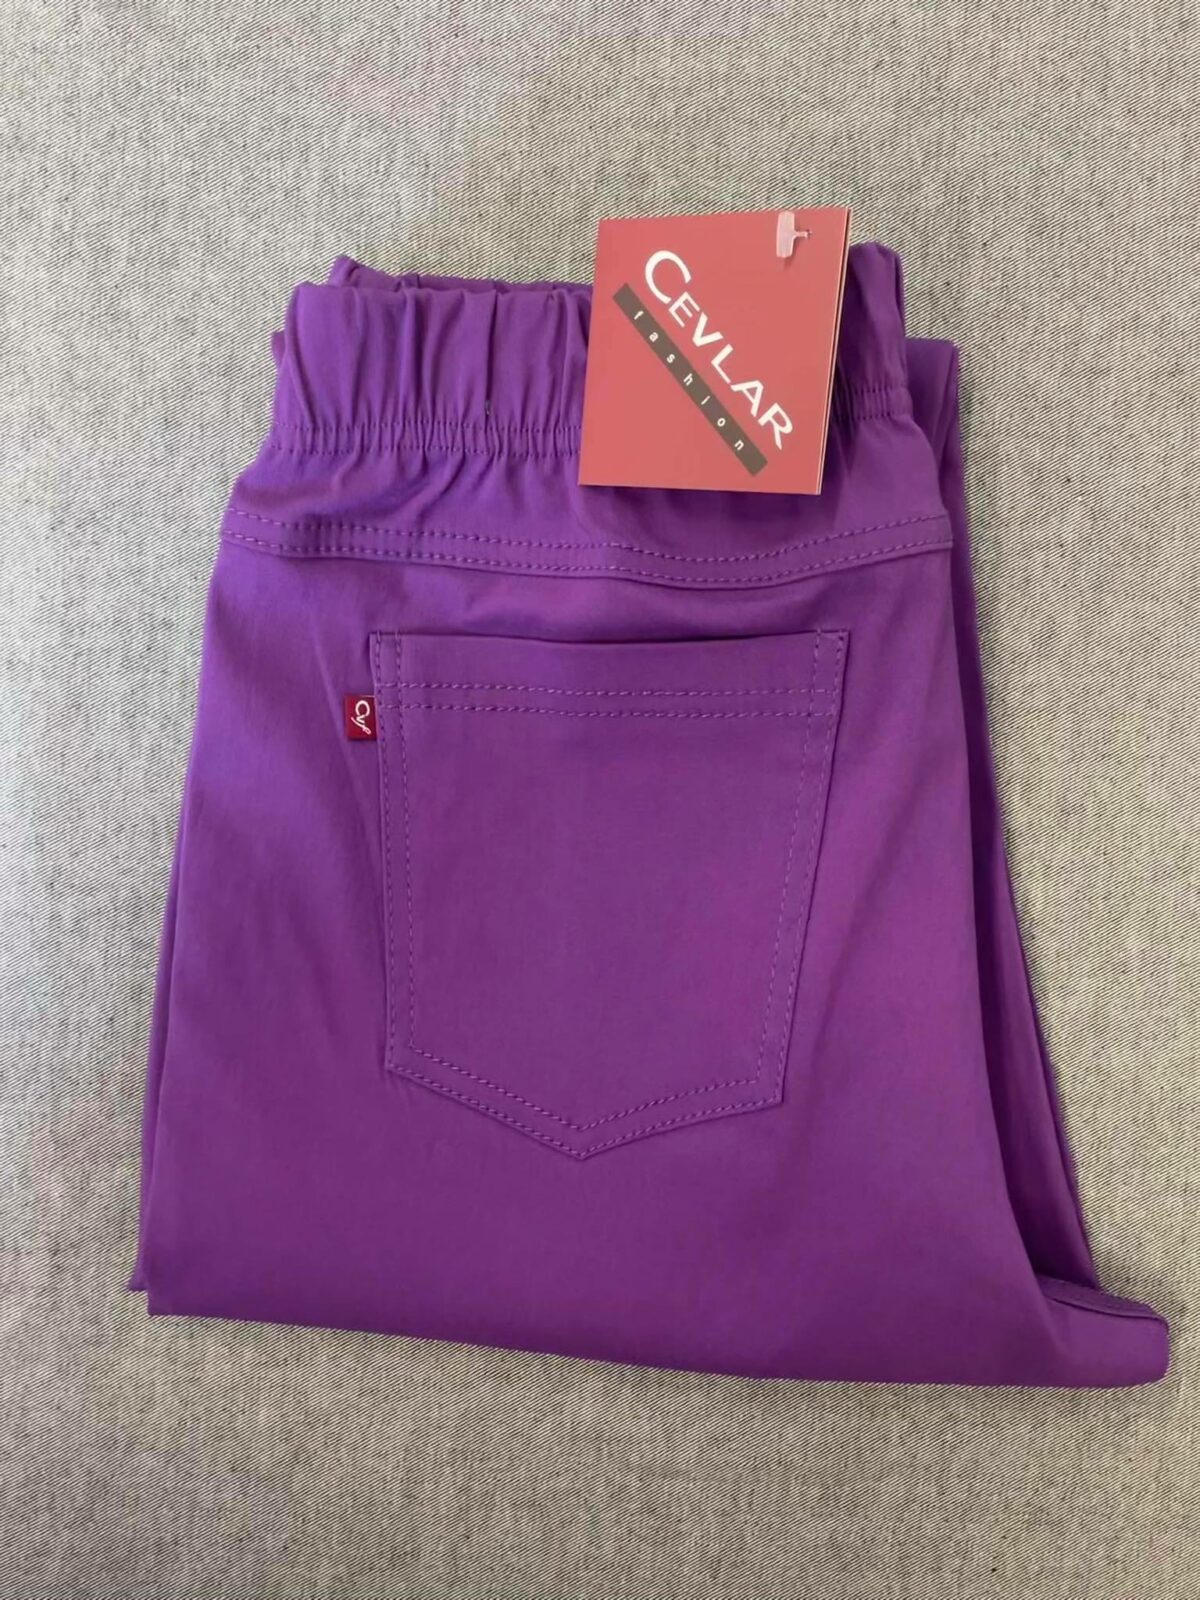 Spodnie z bengaliny Cevlar B04 kolor śliwkowy, plus size XXL